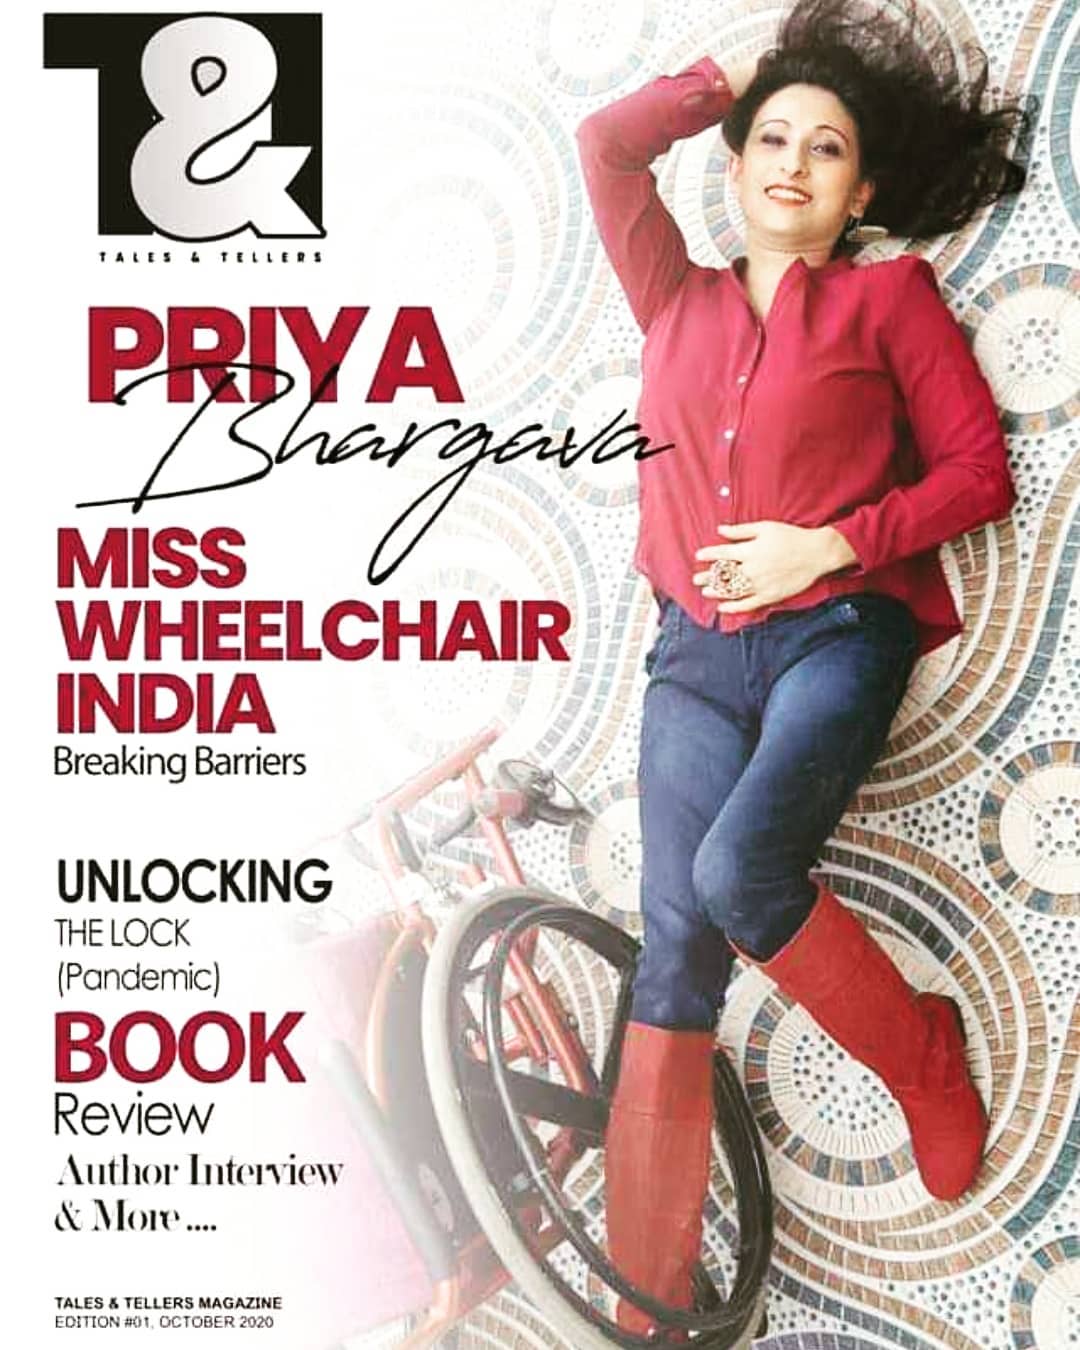 Miss India Wheelchair Priya Bhargava on Magzine Cover